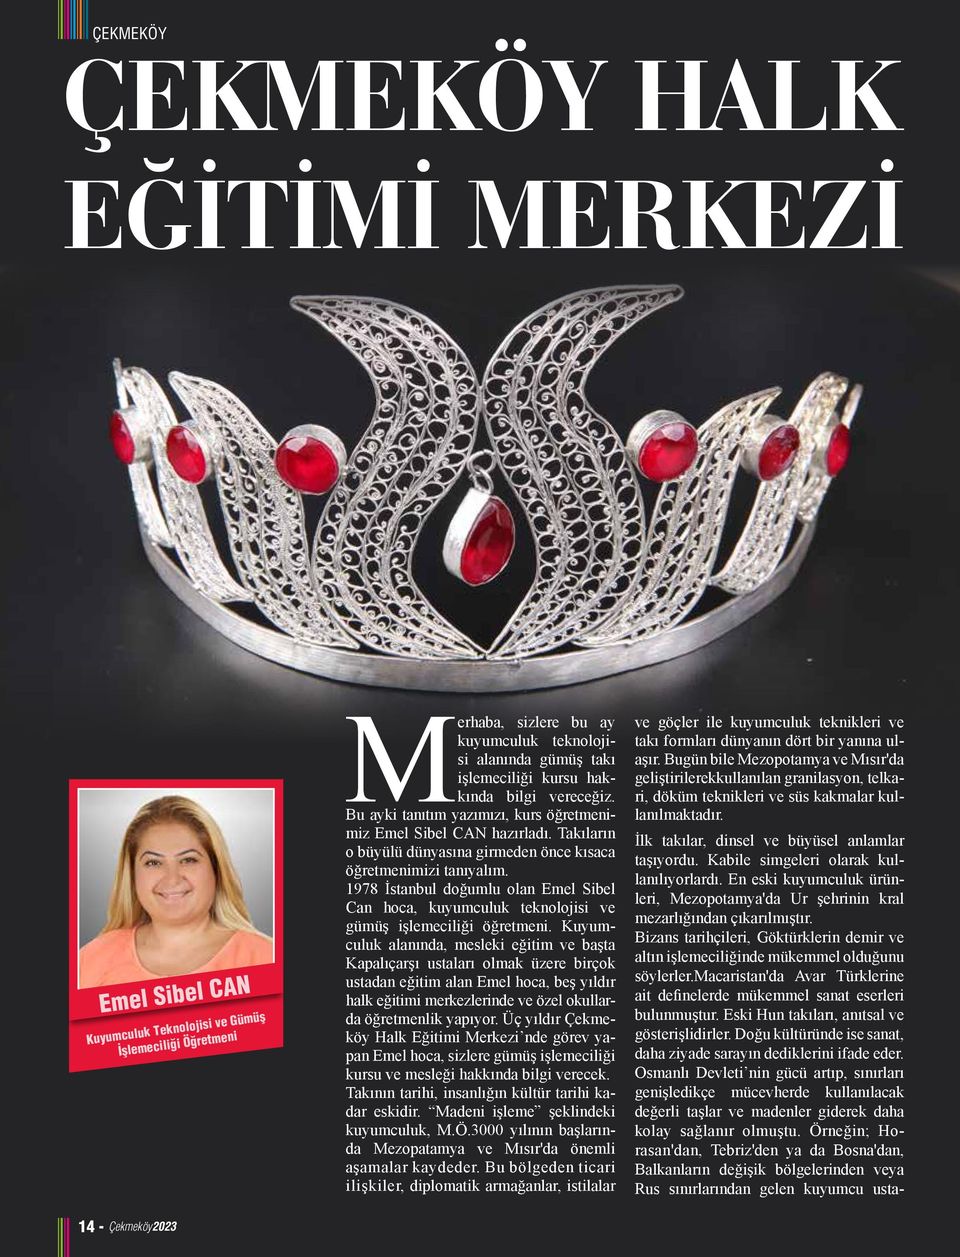 1978 İstanbul doğumlu olan Emel Sibel Can hoca, kuyumculuk teknolojisi ve gümüş işlemeciliği öğretmeni.